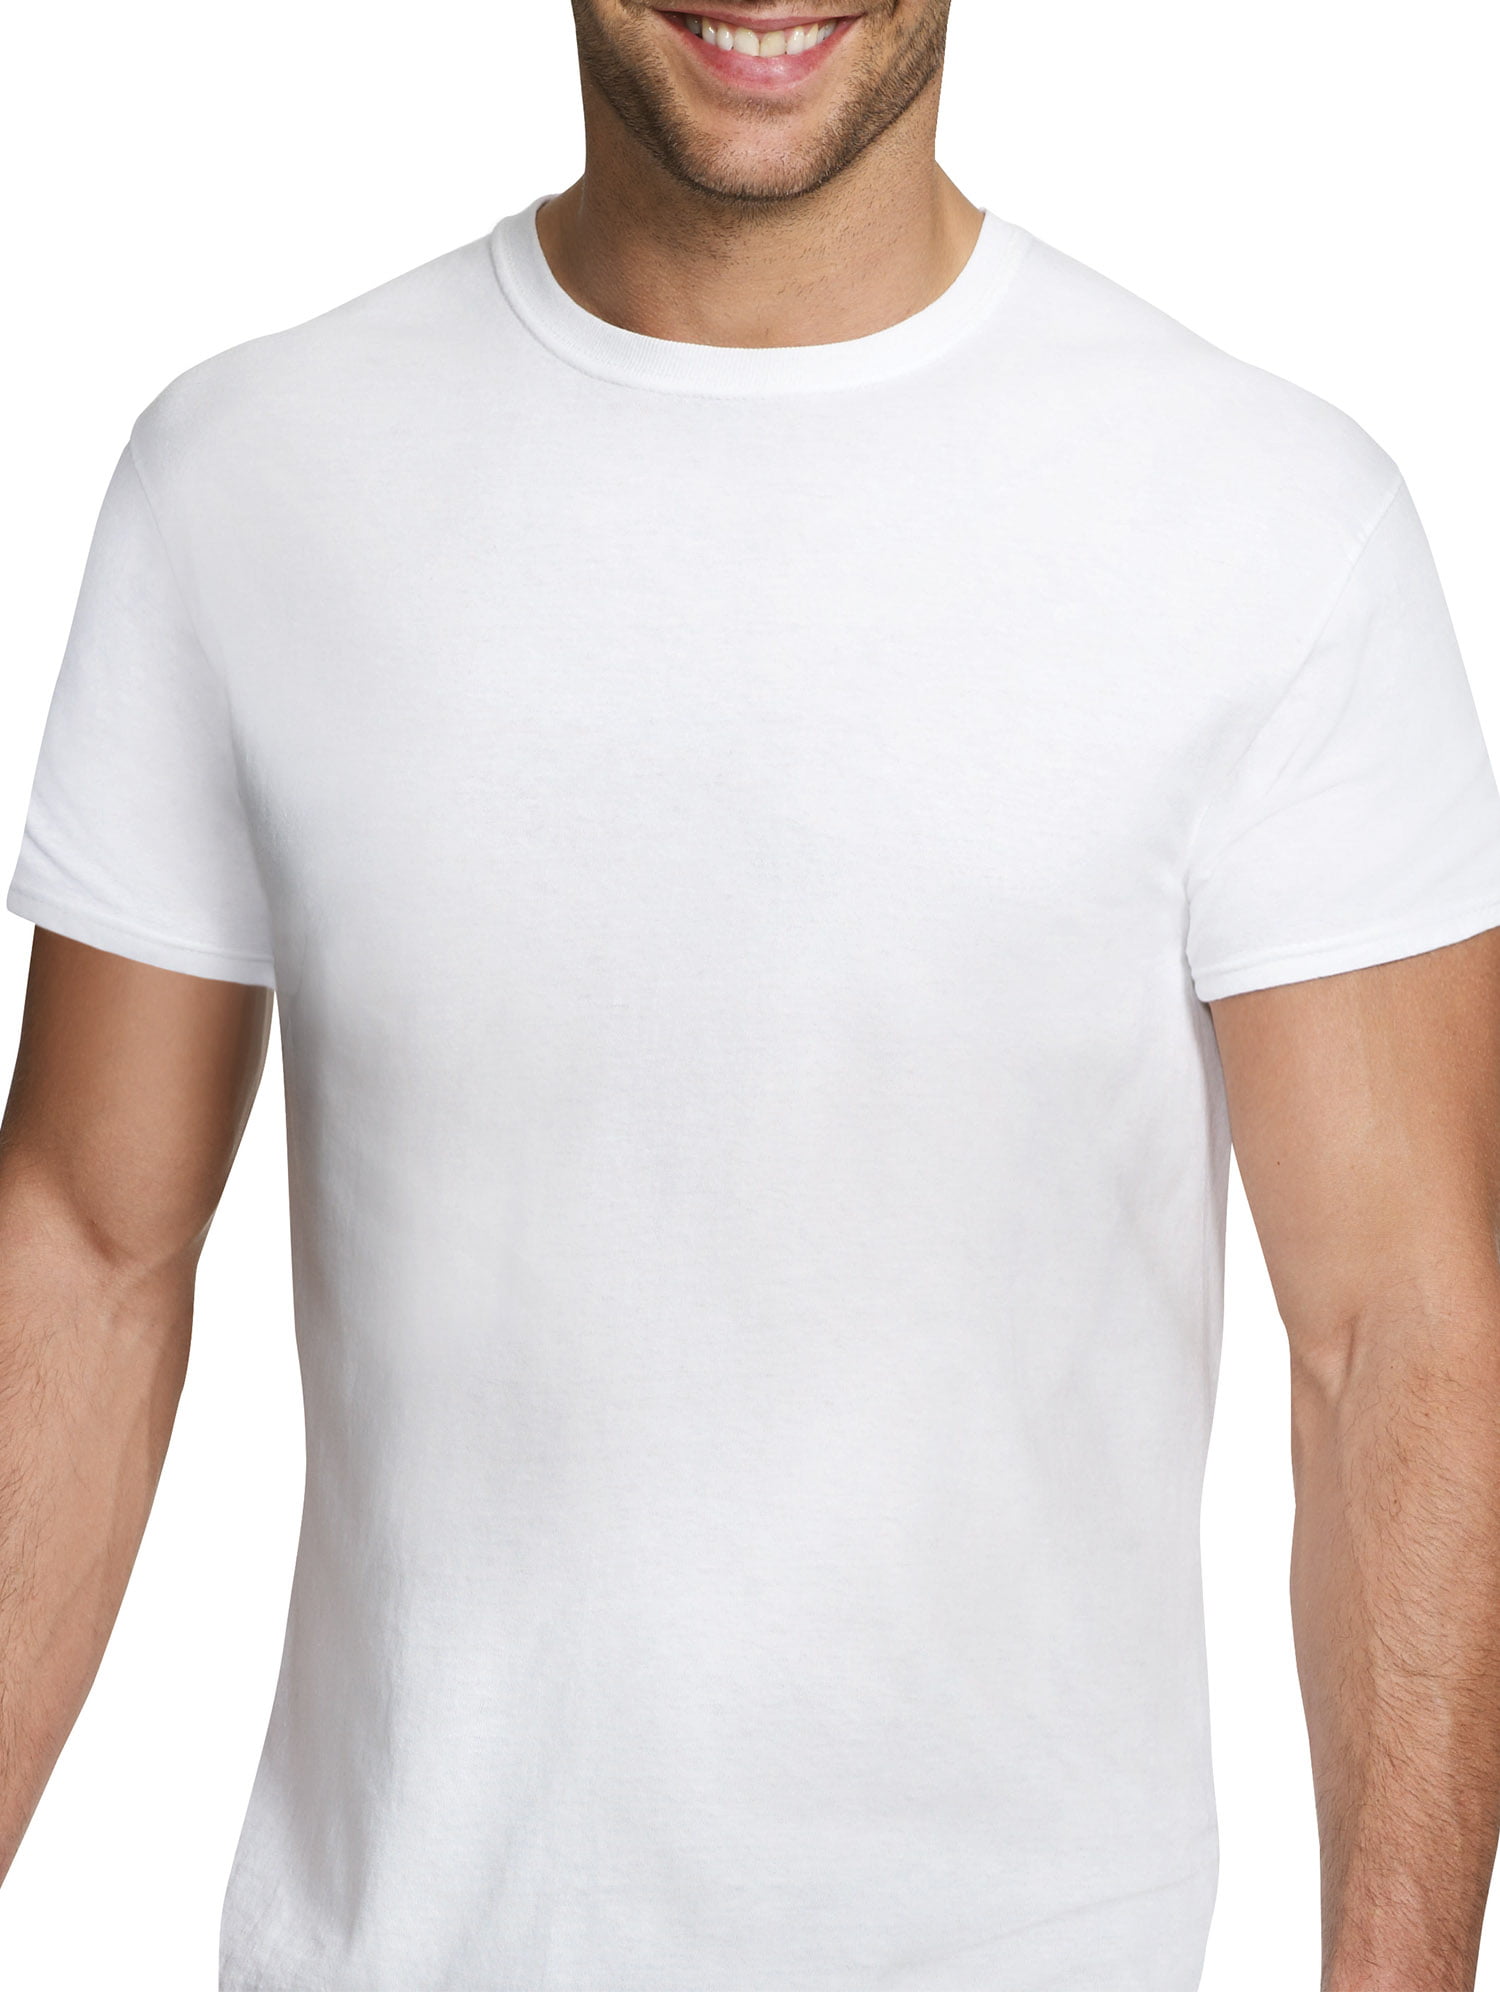 Hanes - Hanes Men's Comfort Flex Fit Crew T-Shirt 3 Pack - Walmart.com ...